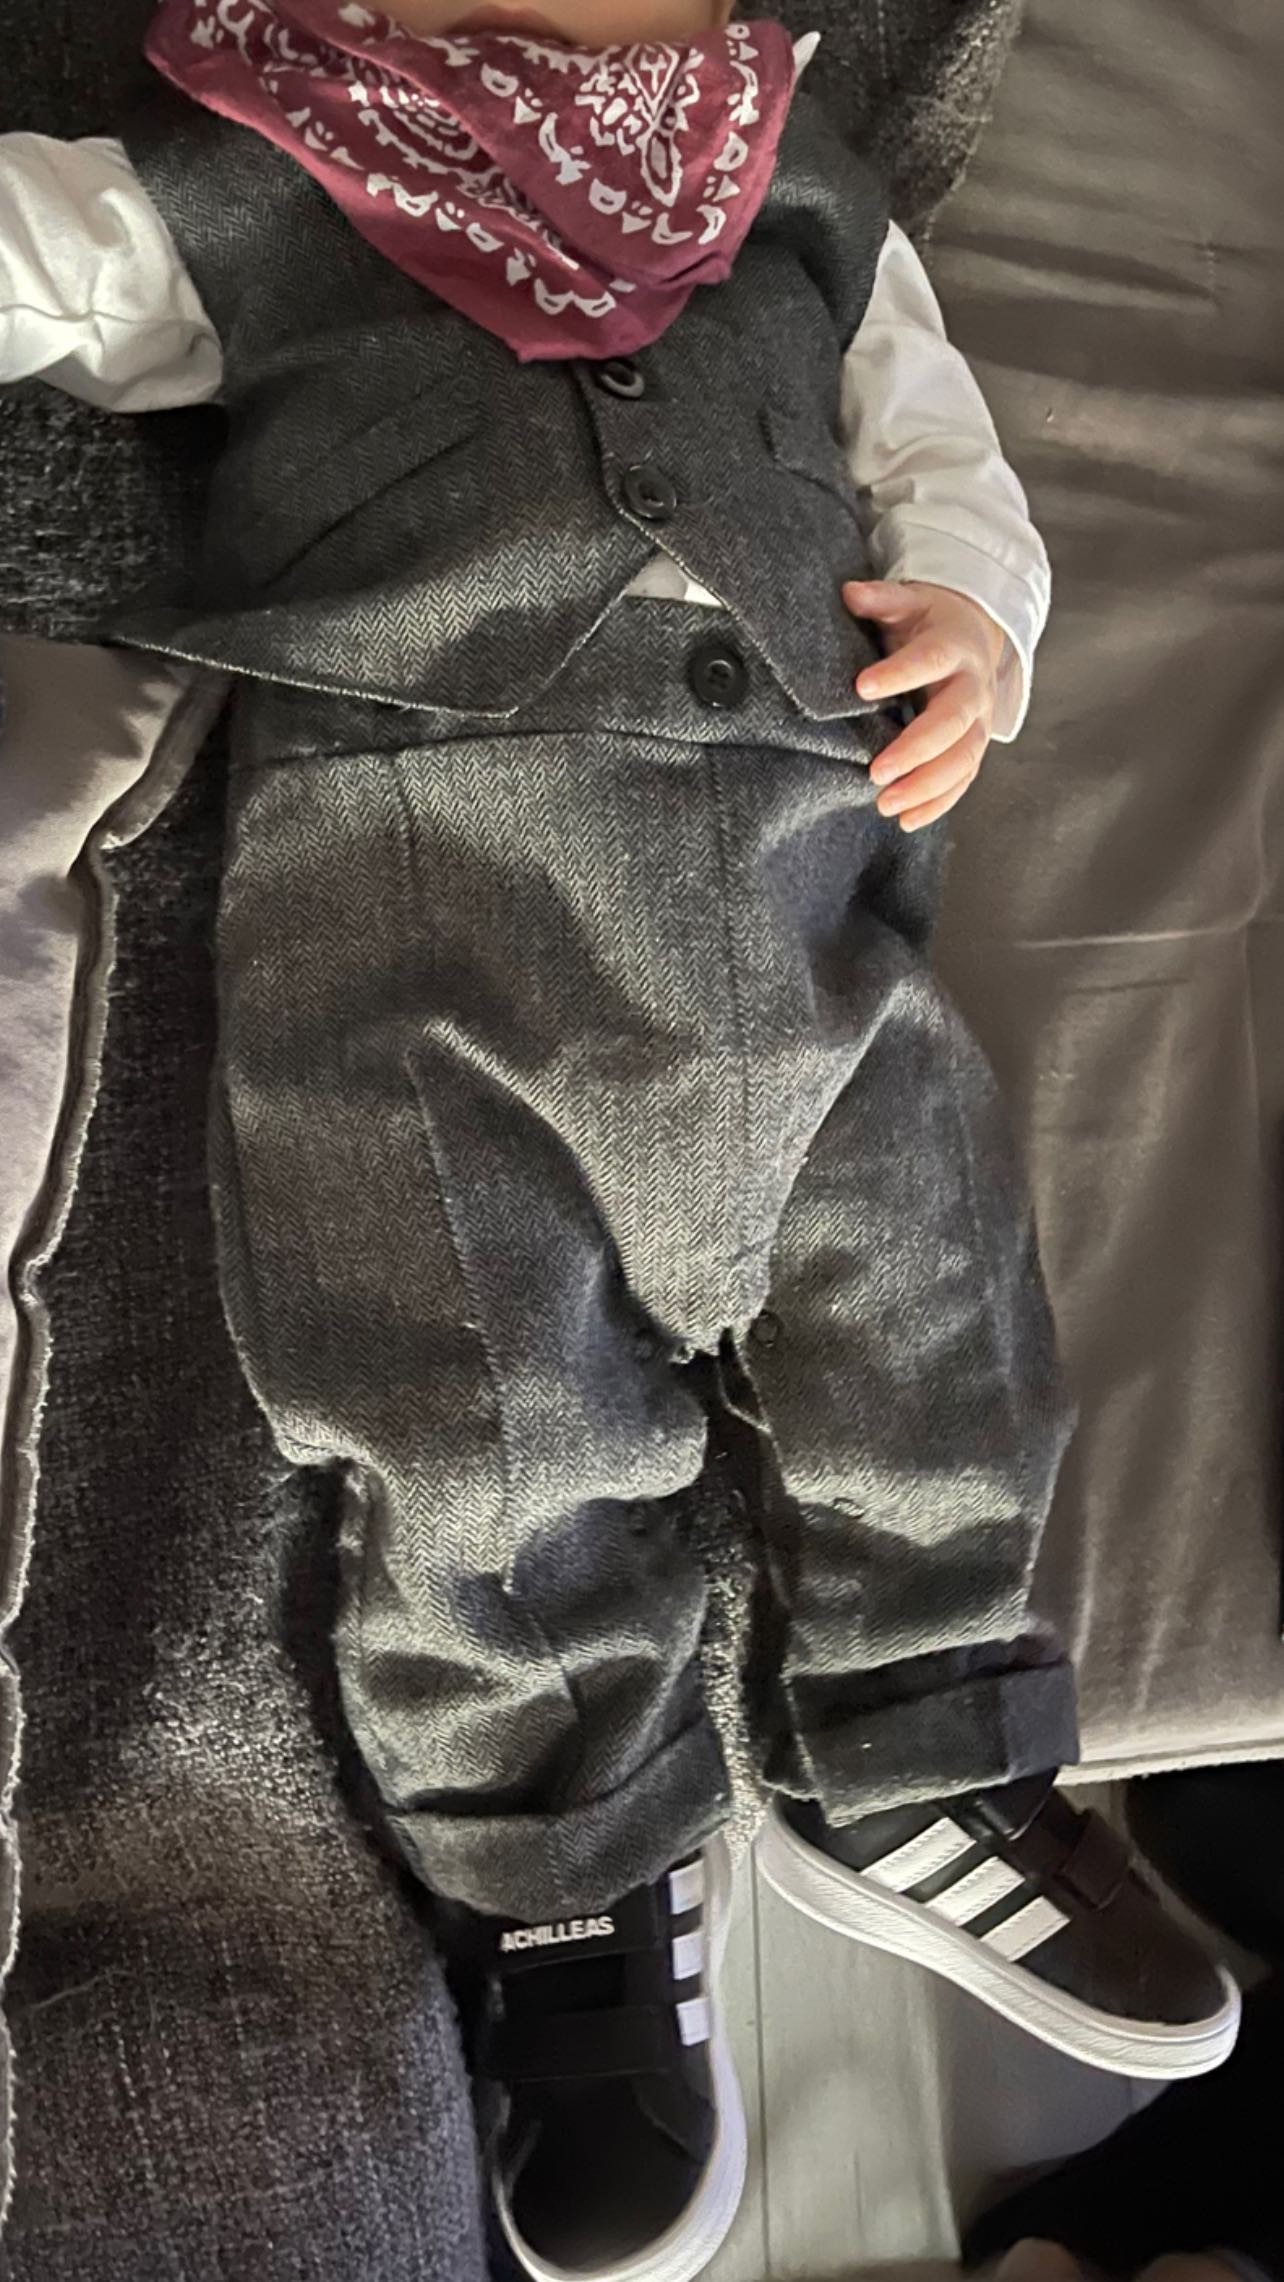 Άκης Πετρετζίκης: Φωτογραφίζει τον γιο του με απίθανο κοστούμι και παπούτσια με το όνομά του! (εικόνα)